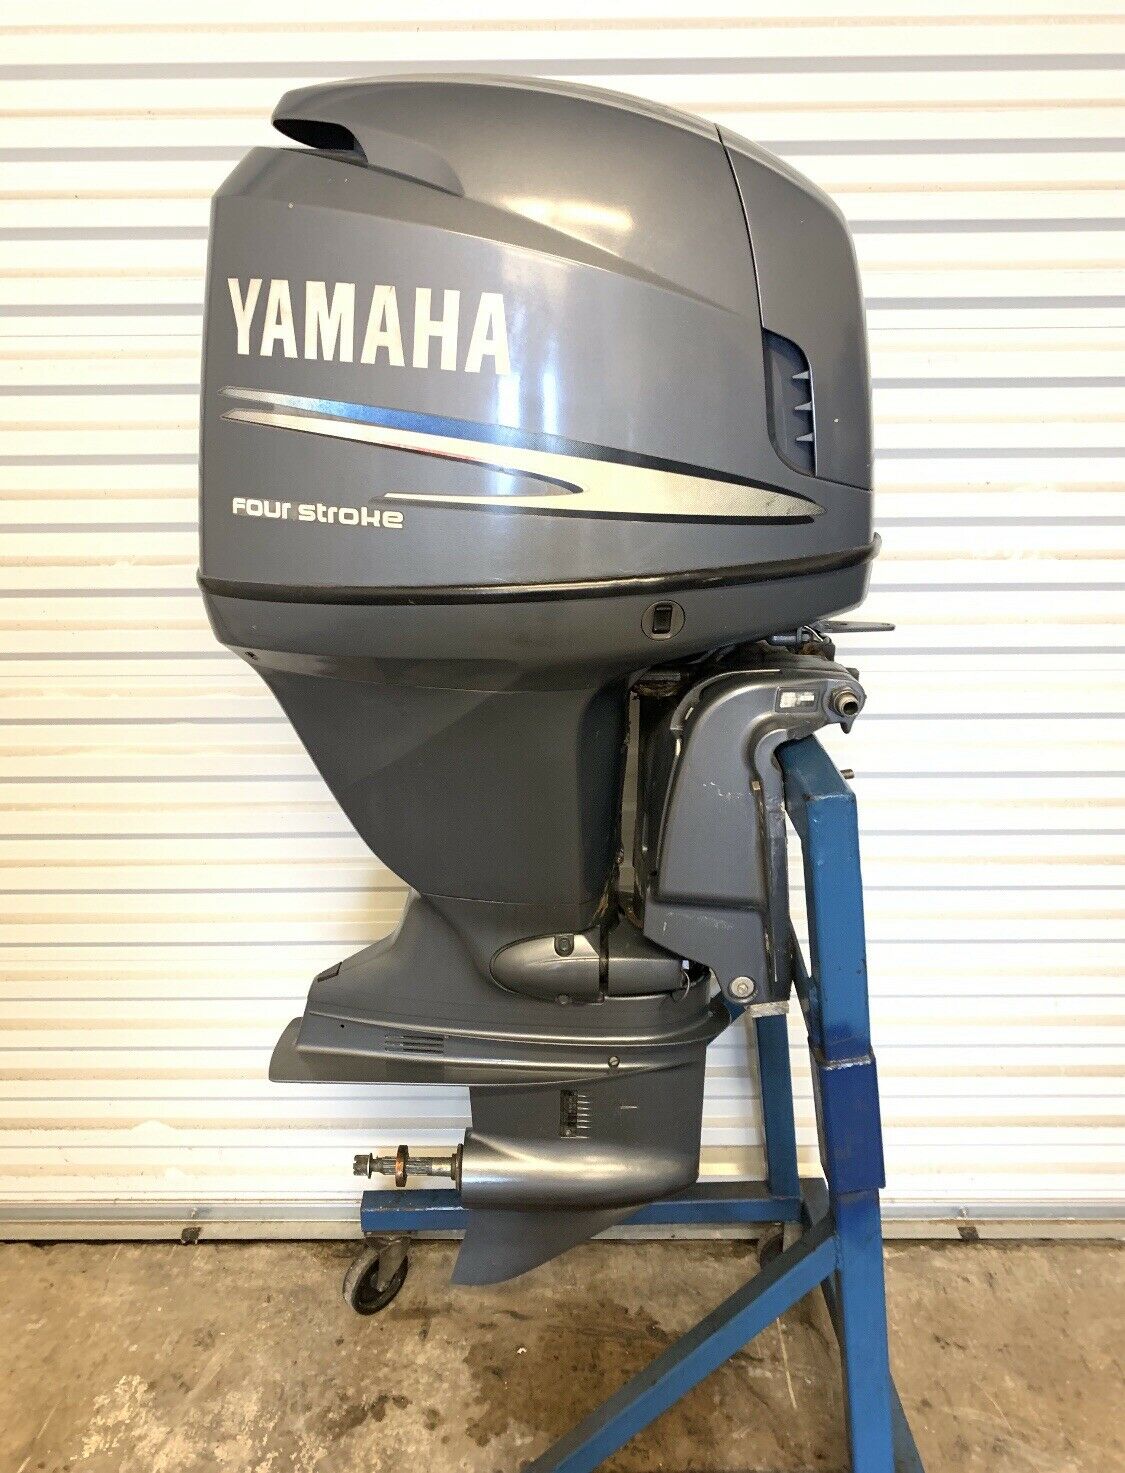 Купить мотор 115. Yamaha four stroke 115. Yamaha 115 Лодочный мотор. Yamaha outboard Motor. Лодочный мотор Ямаха 115 четырехтактный.